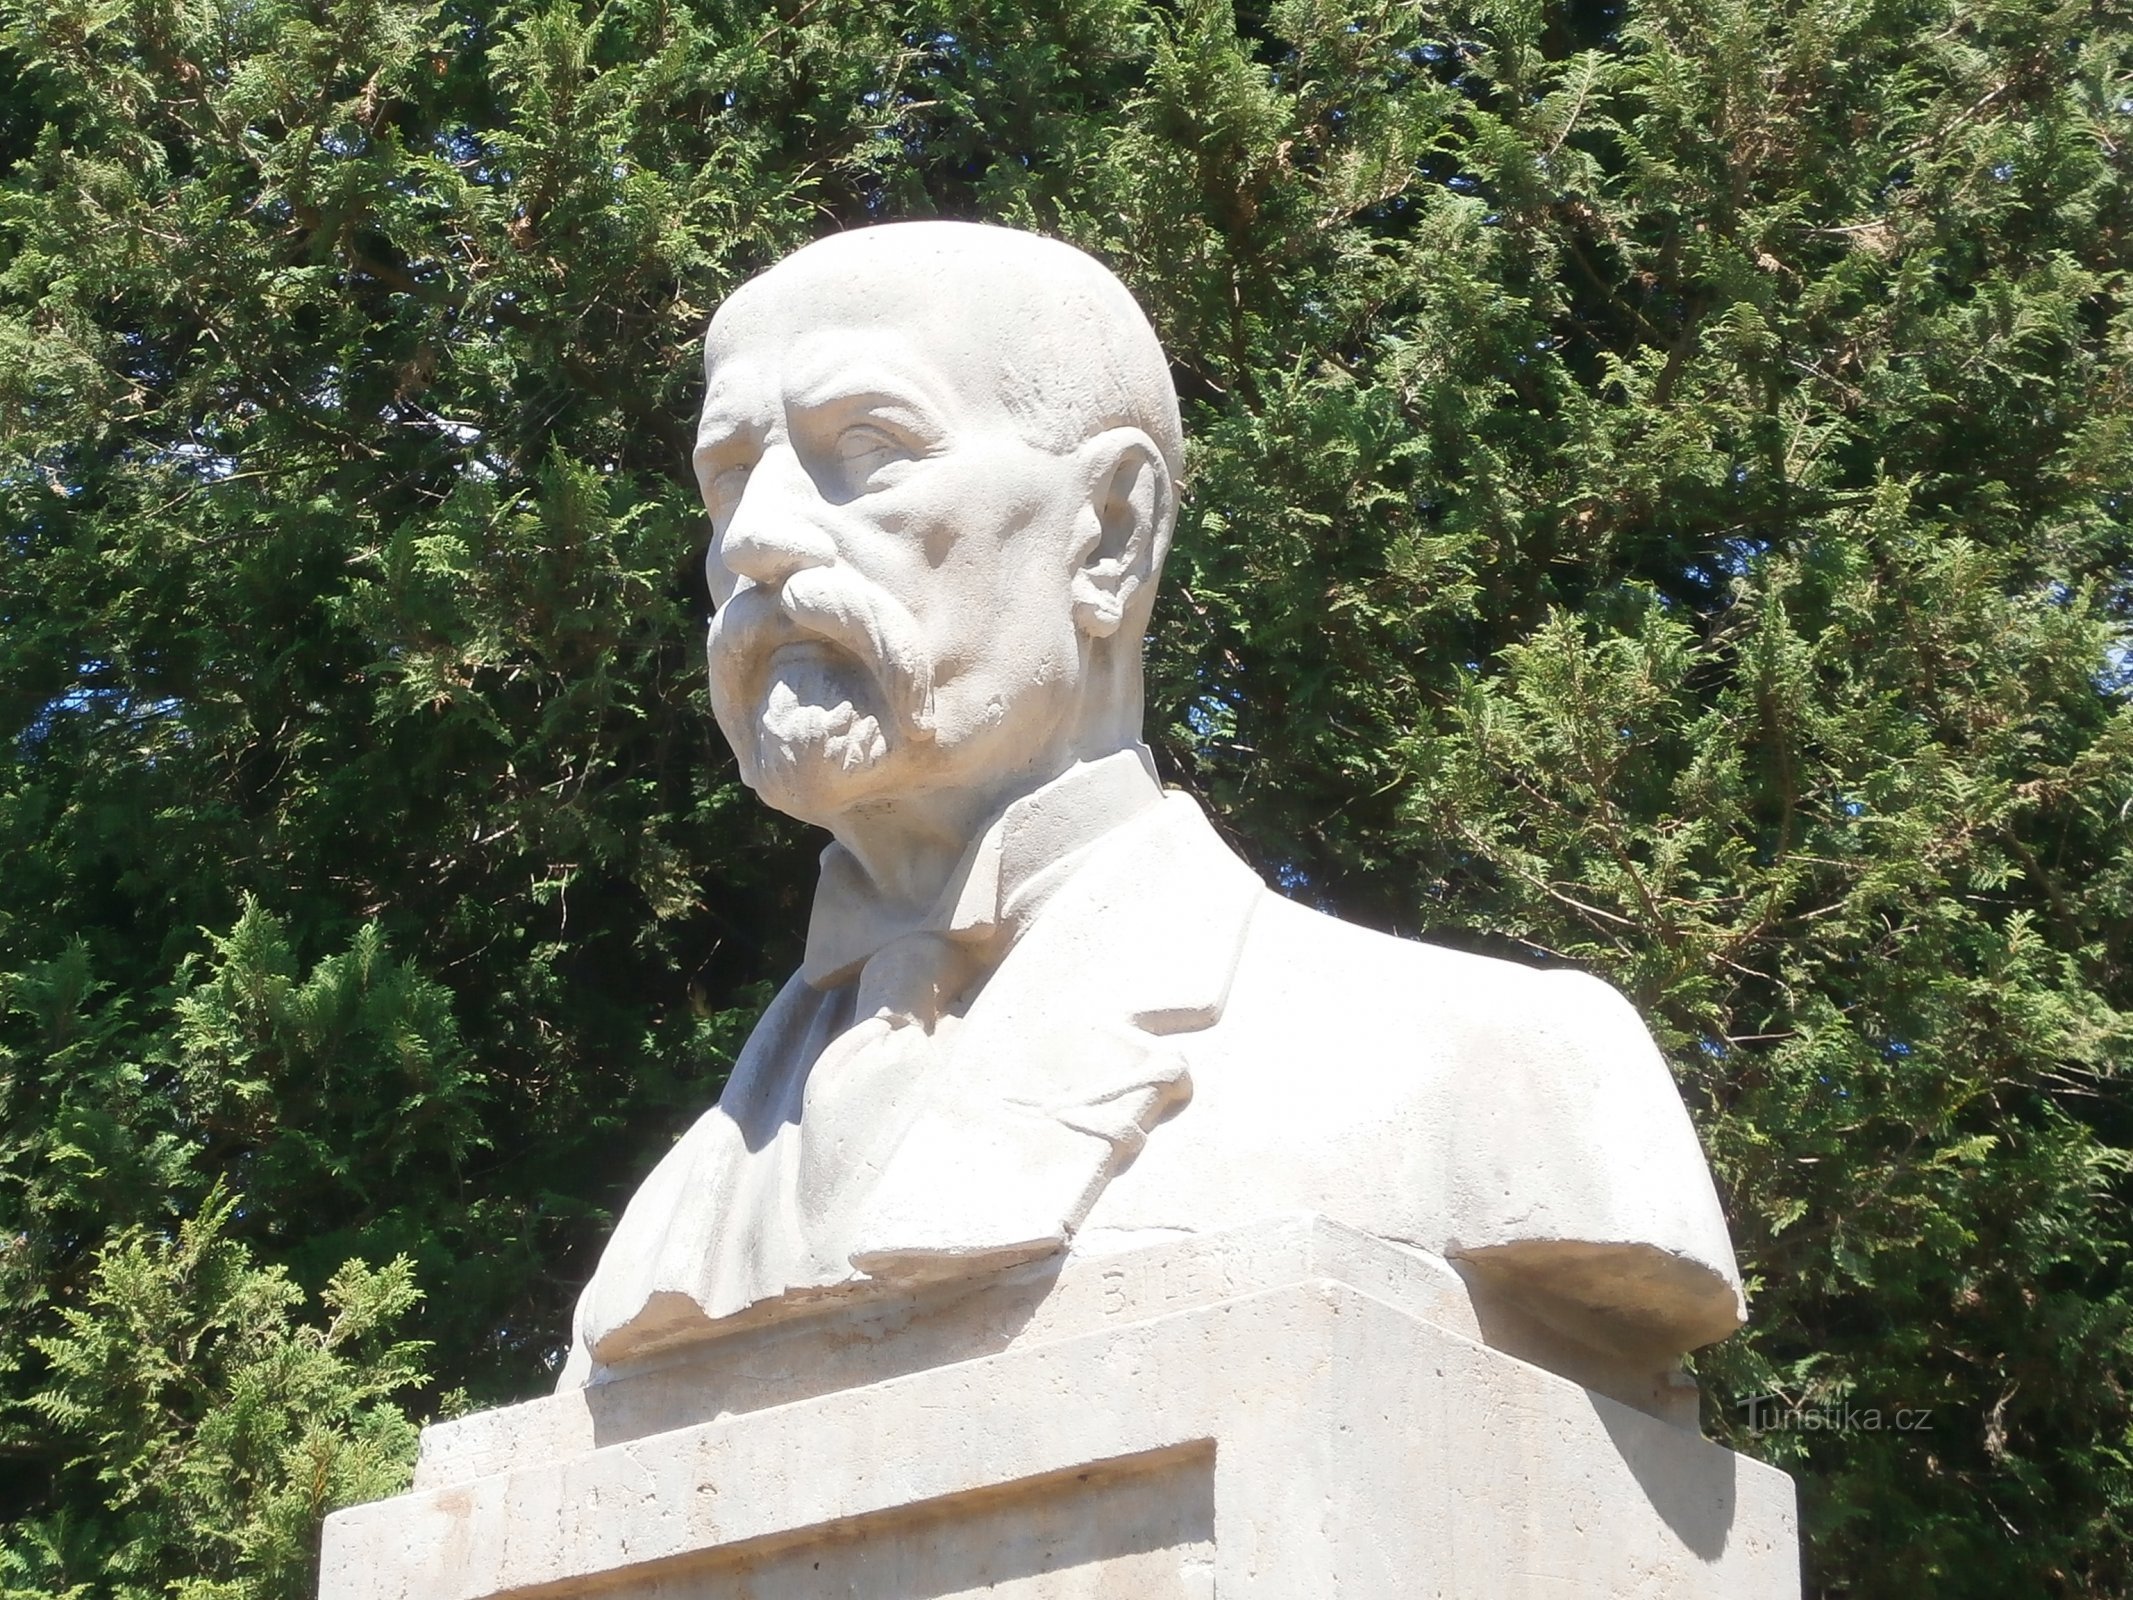 Tượng bán thân của TG Masaryk trên đài tưởng niệm những người đã ngã xuống trong Thế chiến I (Havlovice)